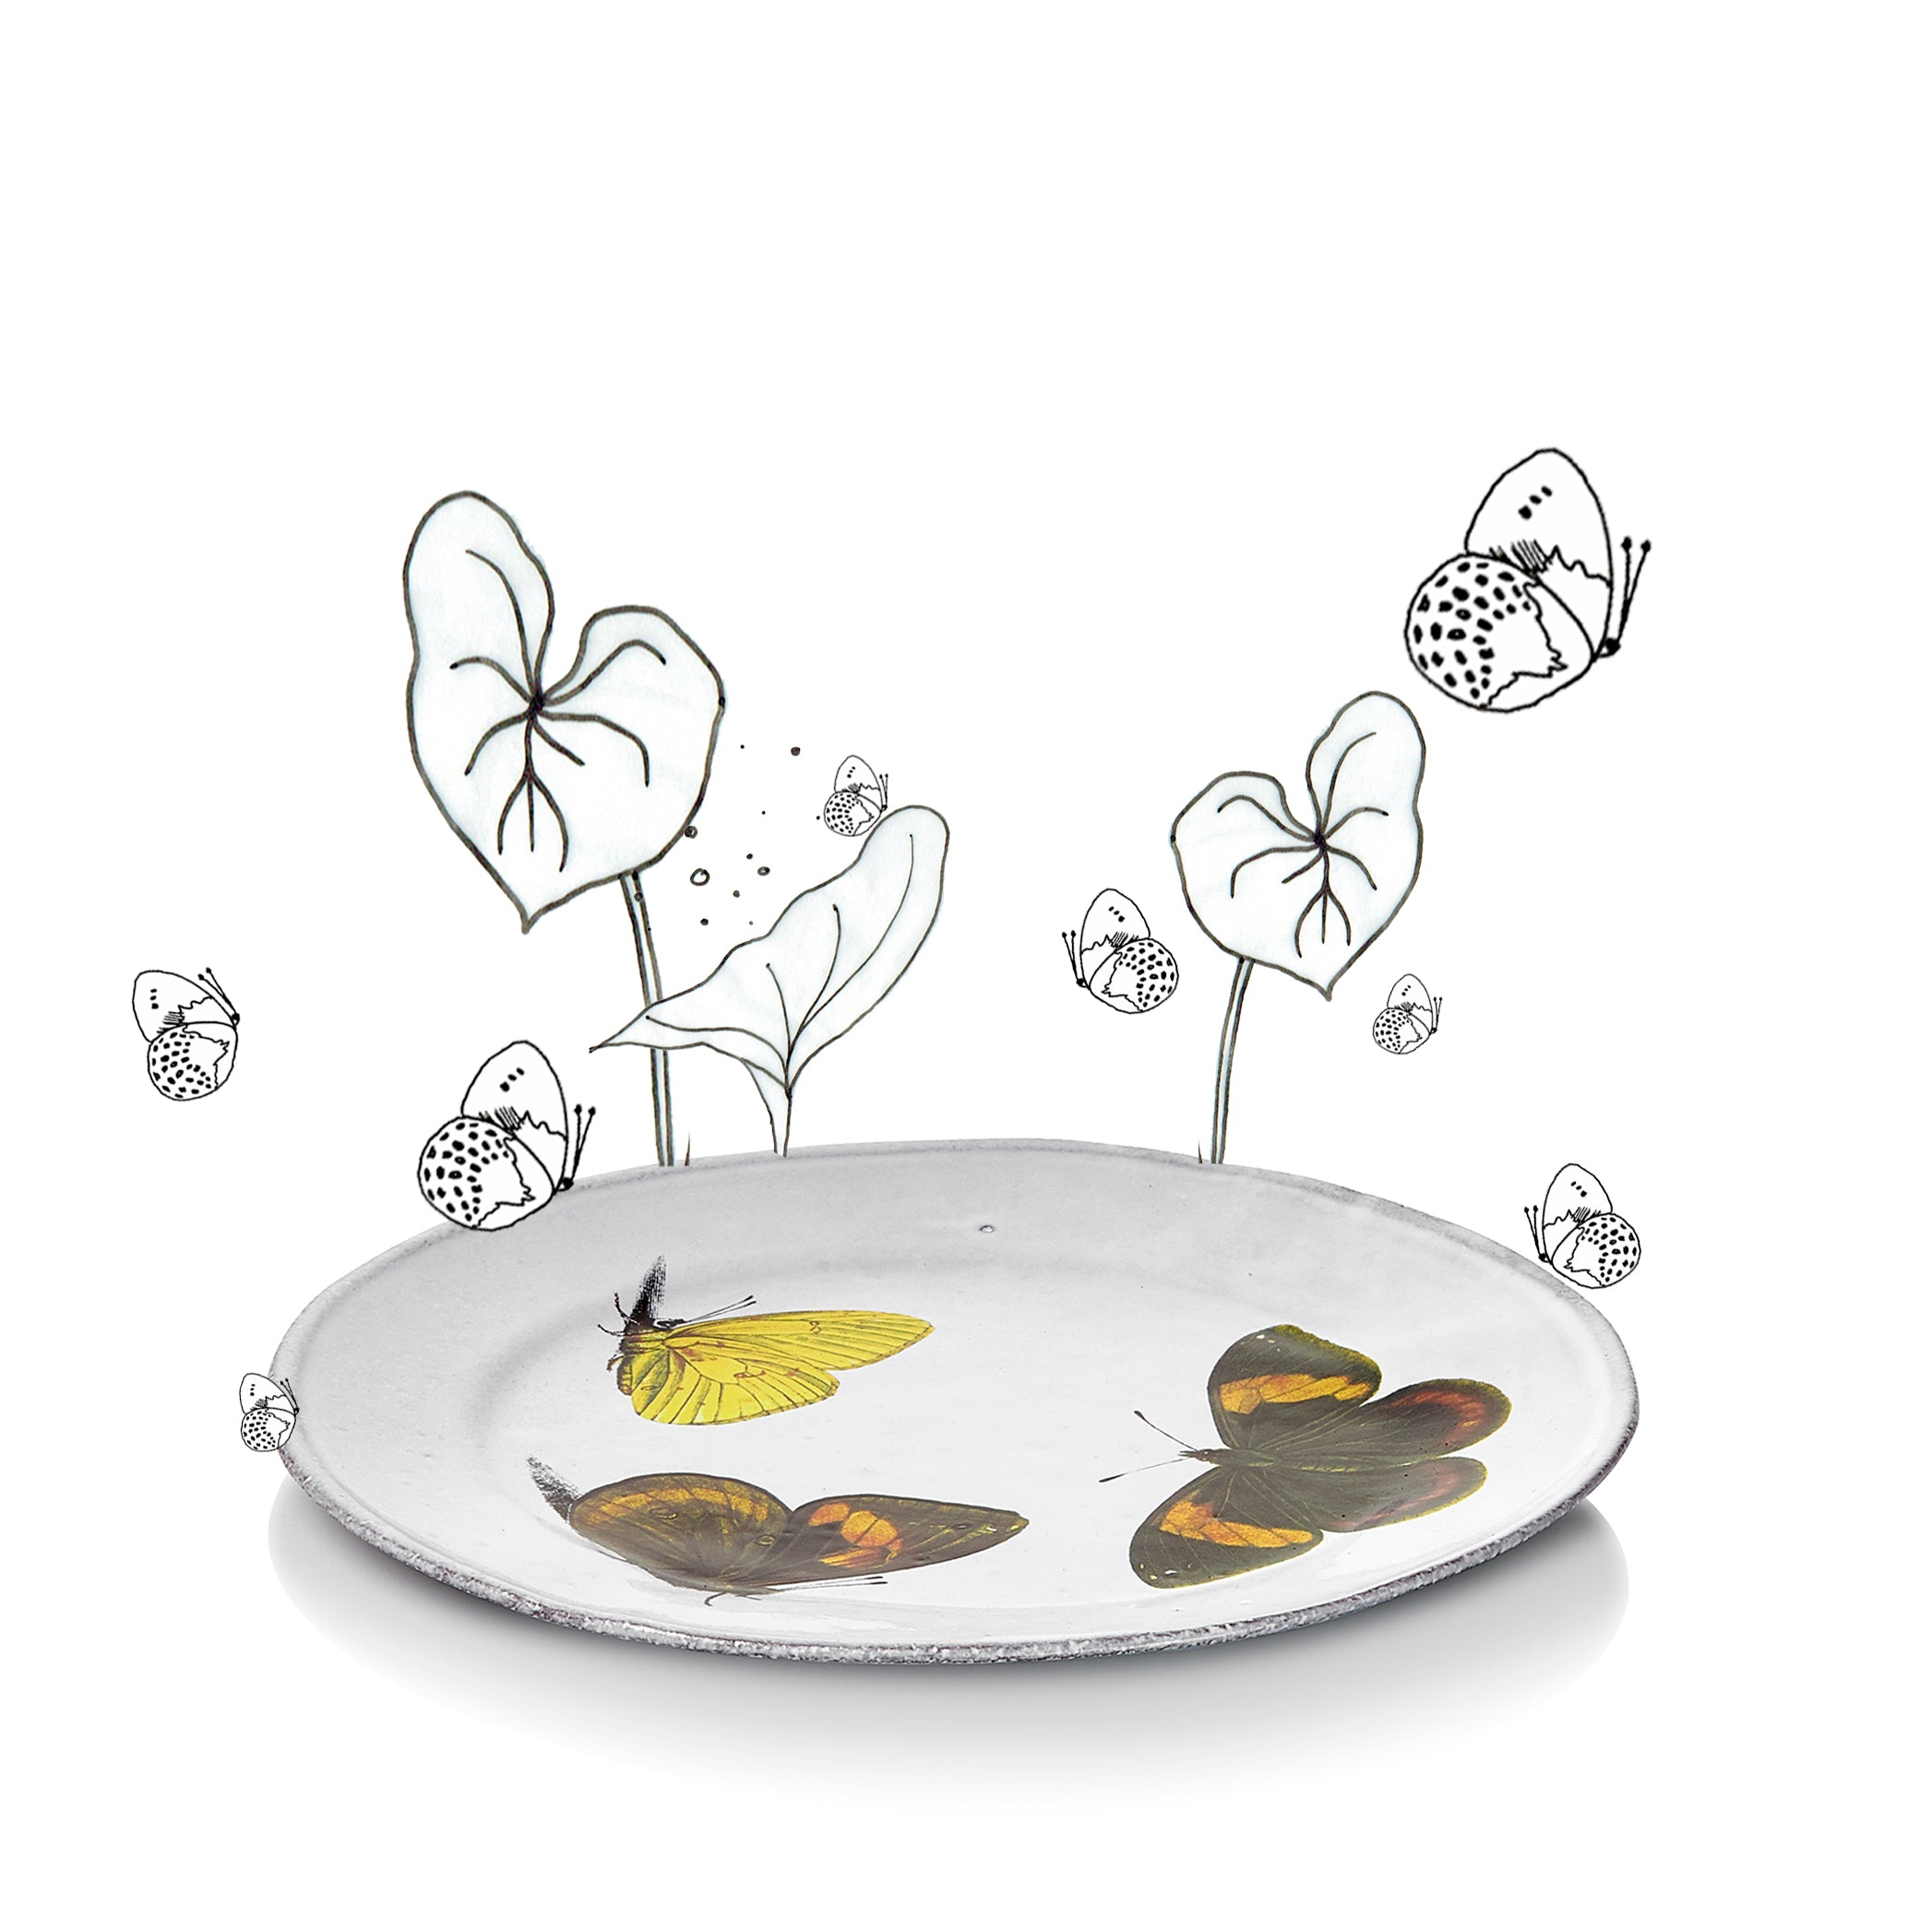 Three Butterflies Plate by Astier de Villatte, 19cm